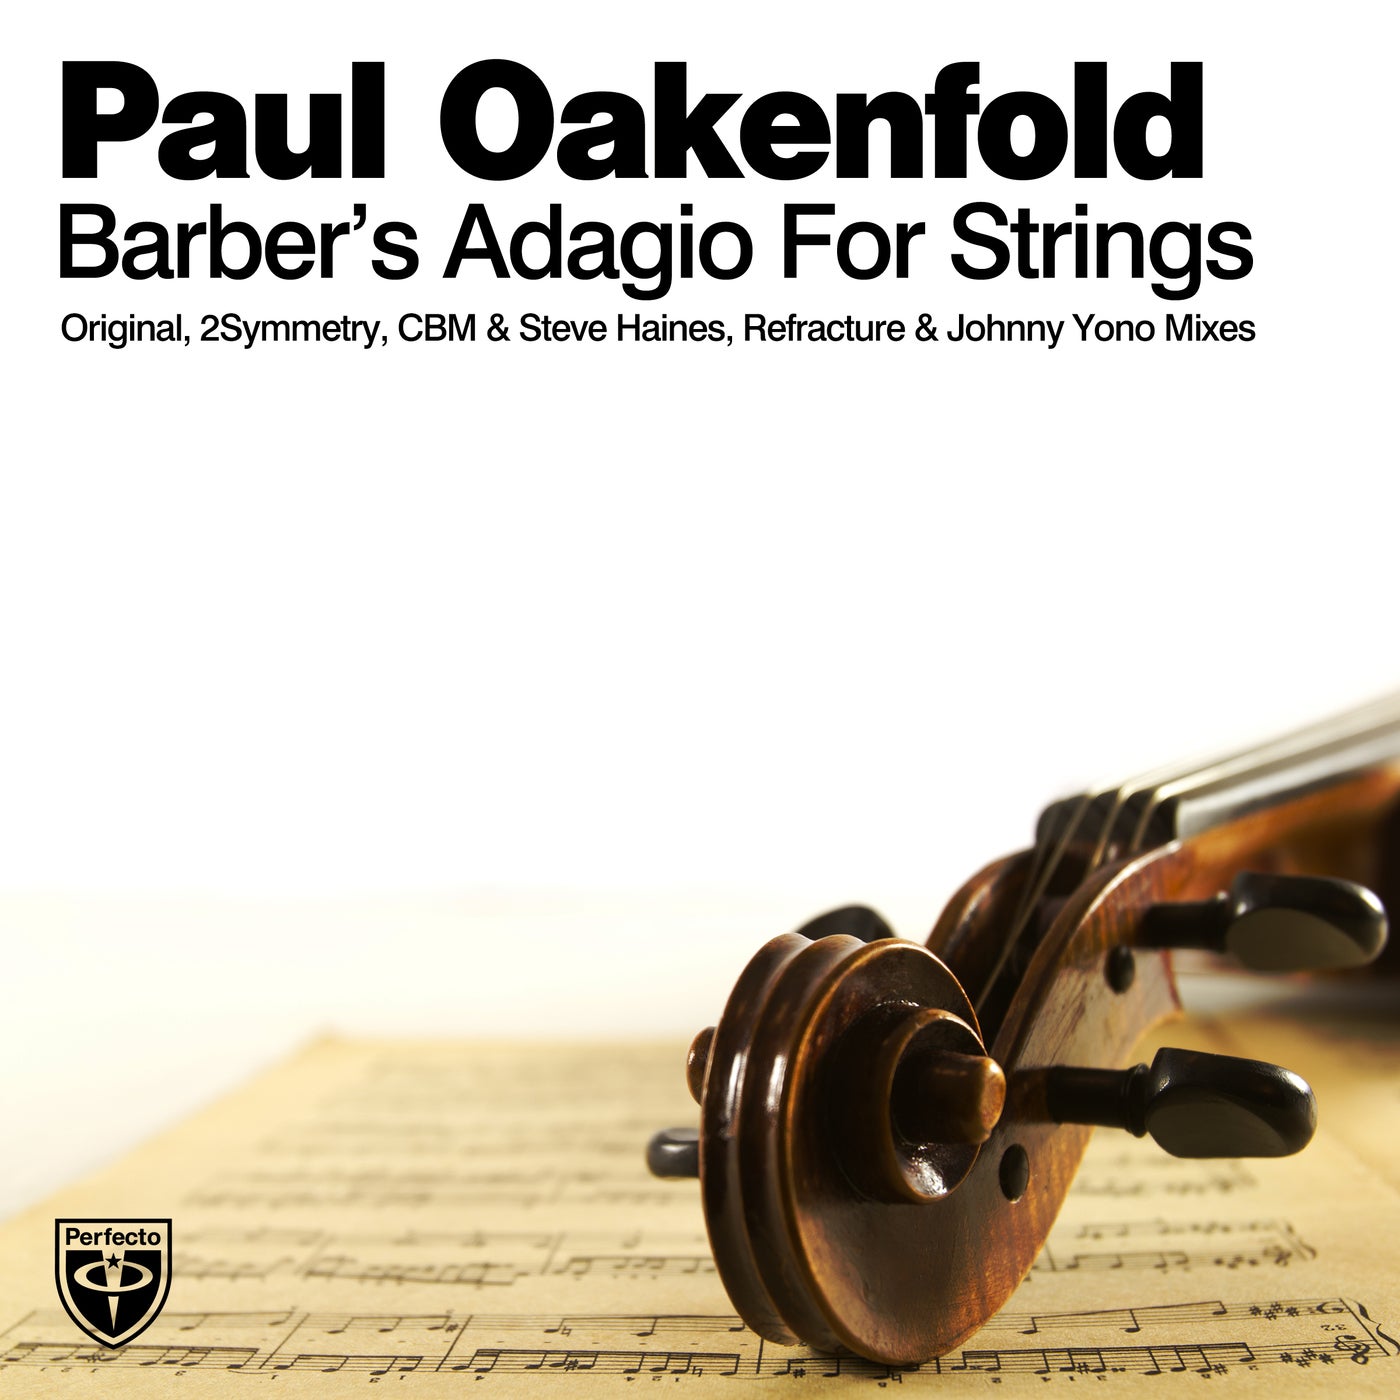 Barber adagio. Барбер Адажио. Adagio for Strings (Original LP Version). William Orbit - Barber's Adagio for Strings. Paul Oakenfold 2002.